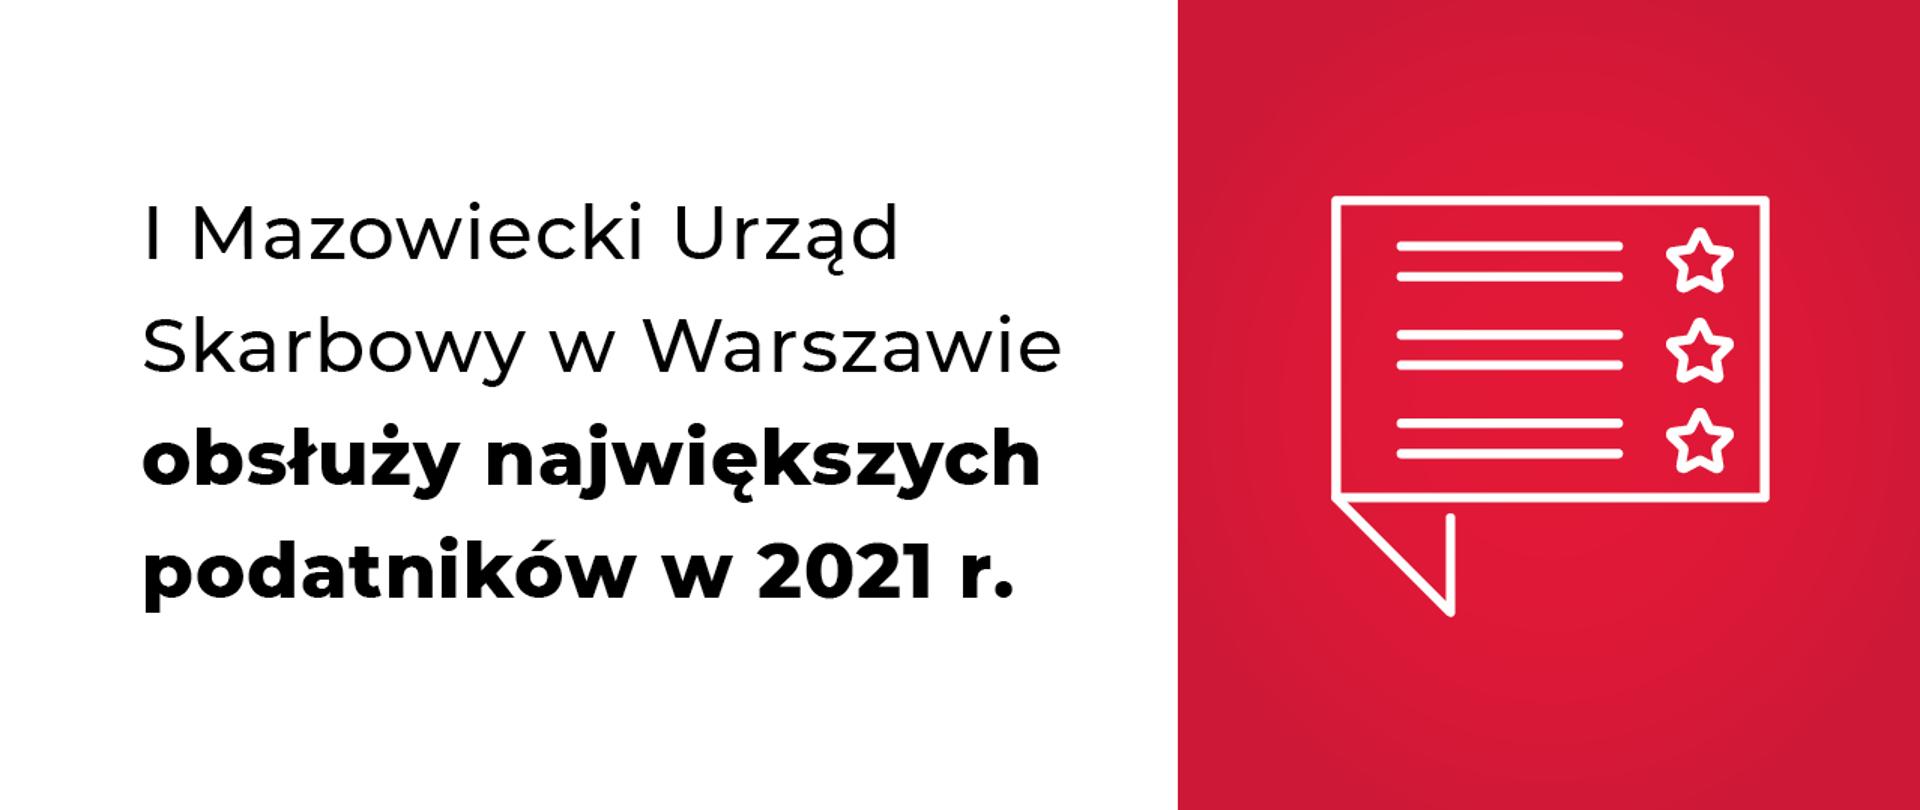 Grafika z napisem Pierwszy Mazowiecki Urząd Skarbowy w Warszawie obsłuży największych podatników w 2021 r.